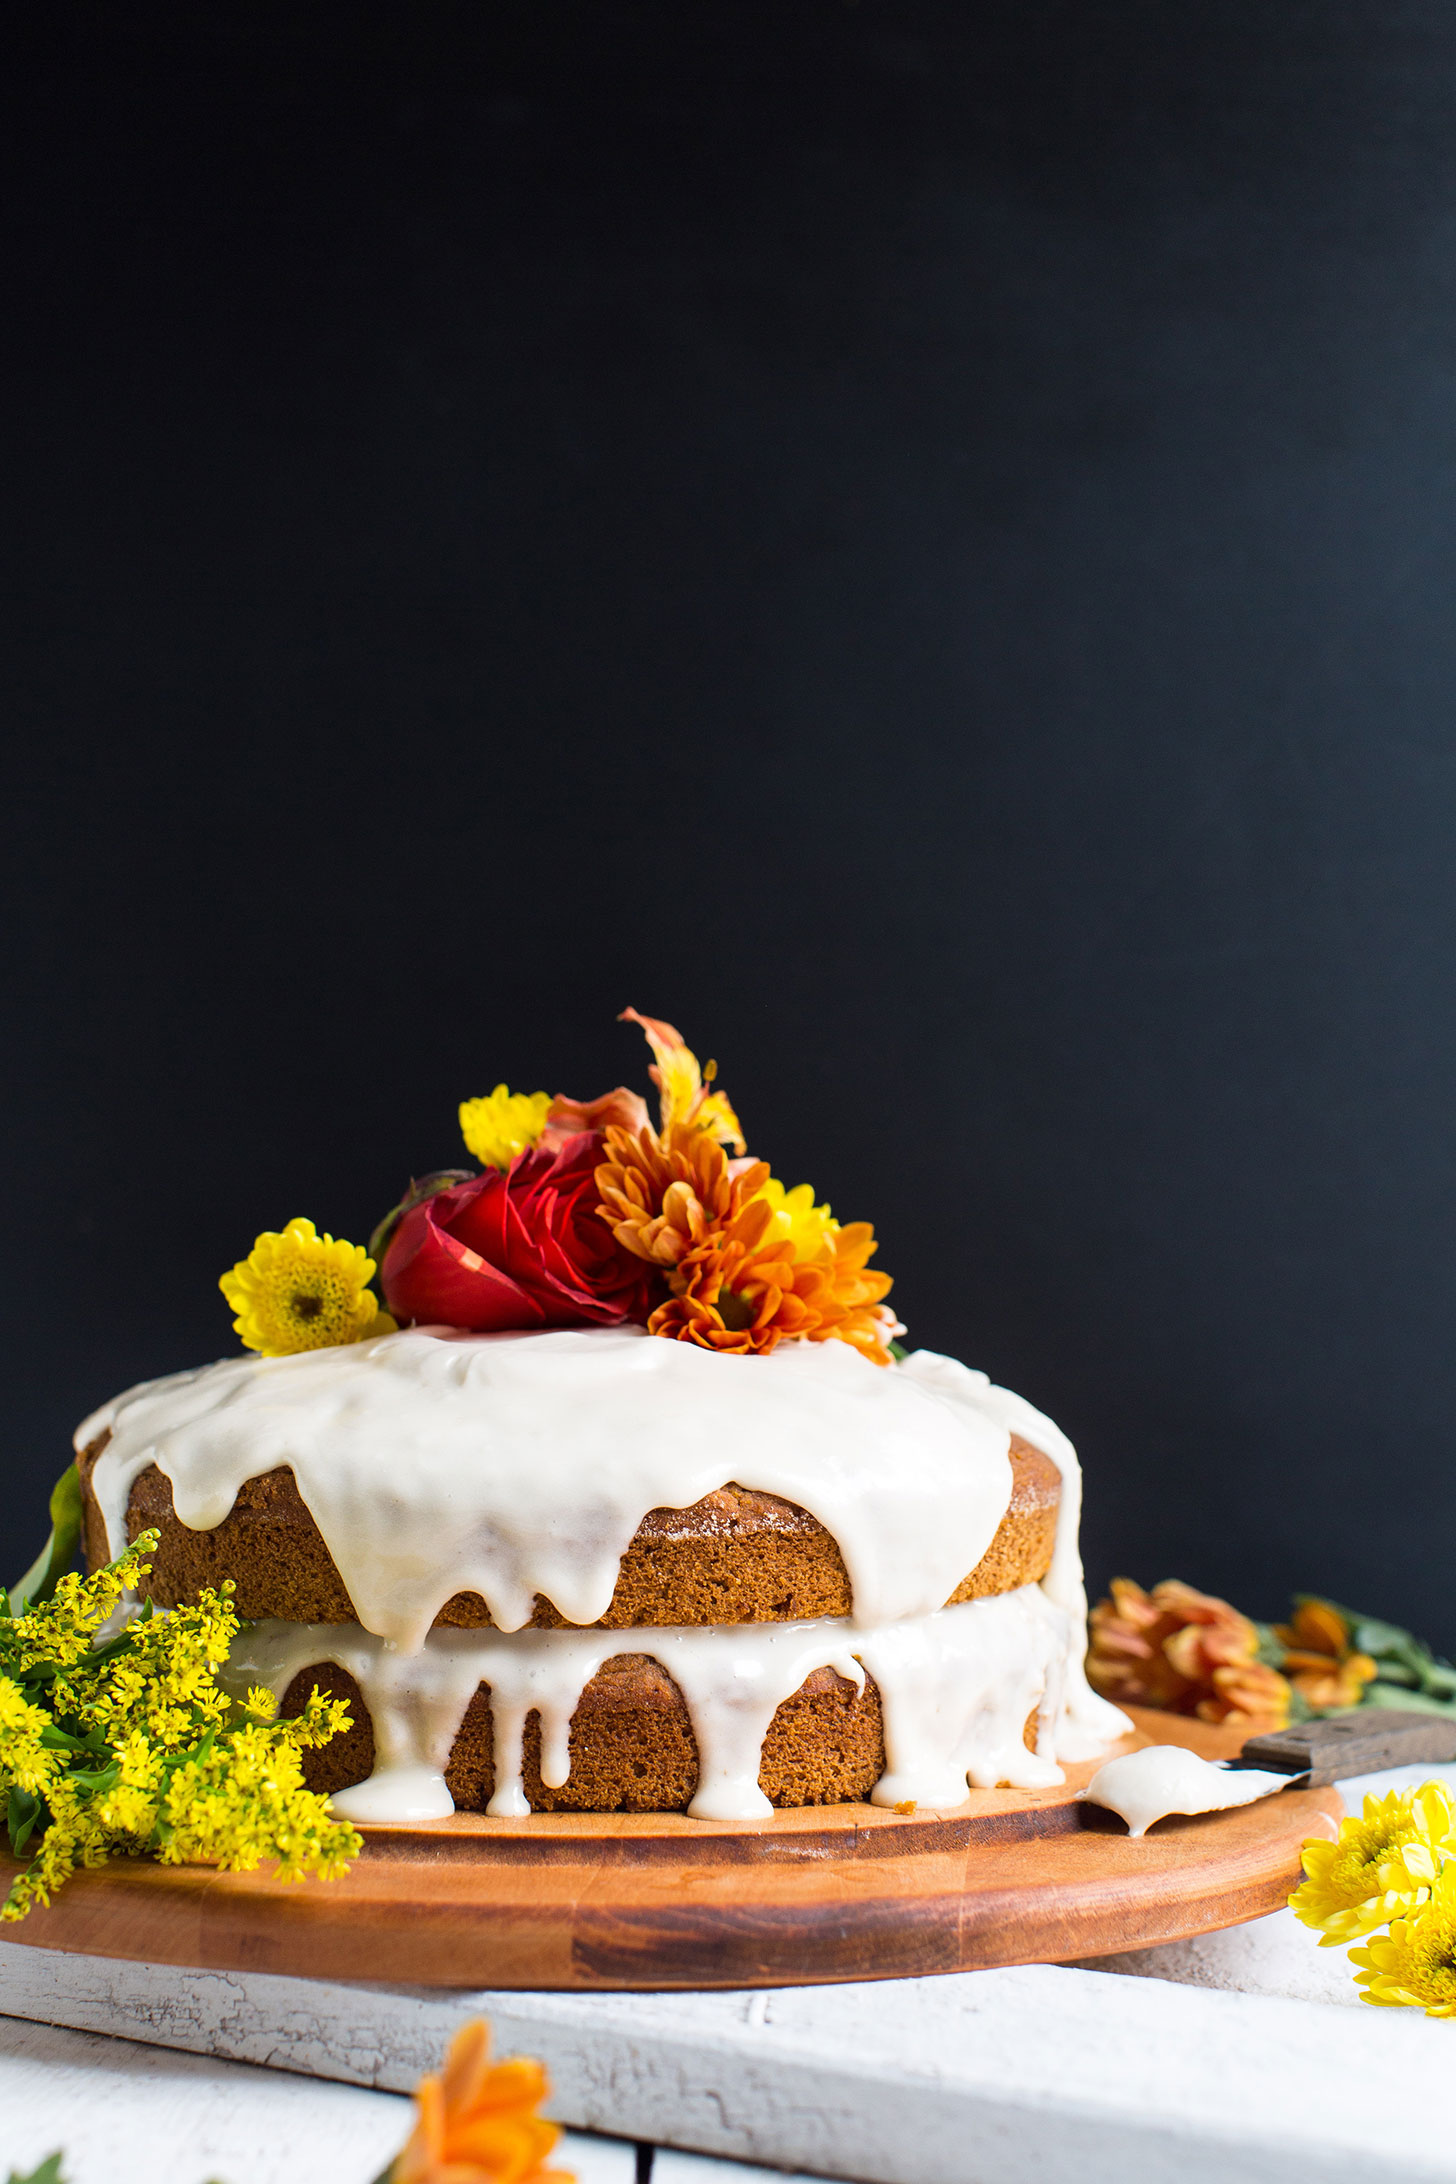 Beautifully decorated gluten-free vegan Pumpkin Cake for an autumn dessert